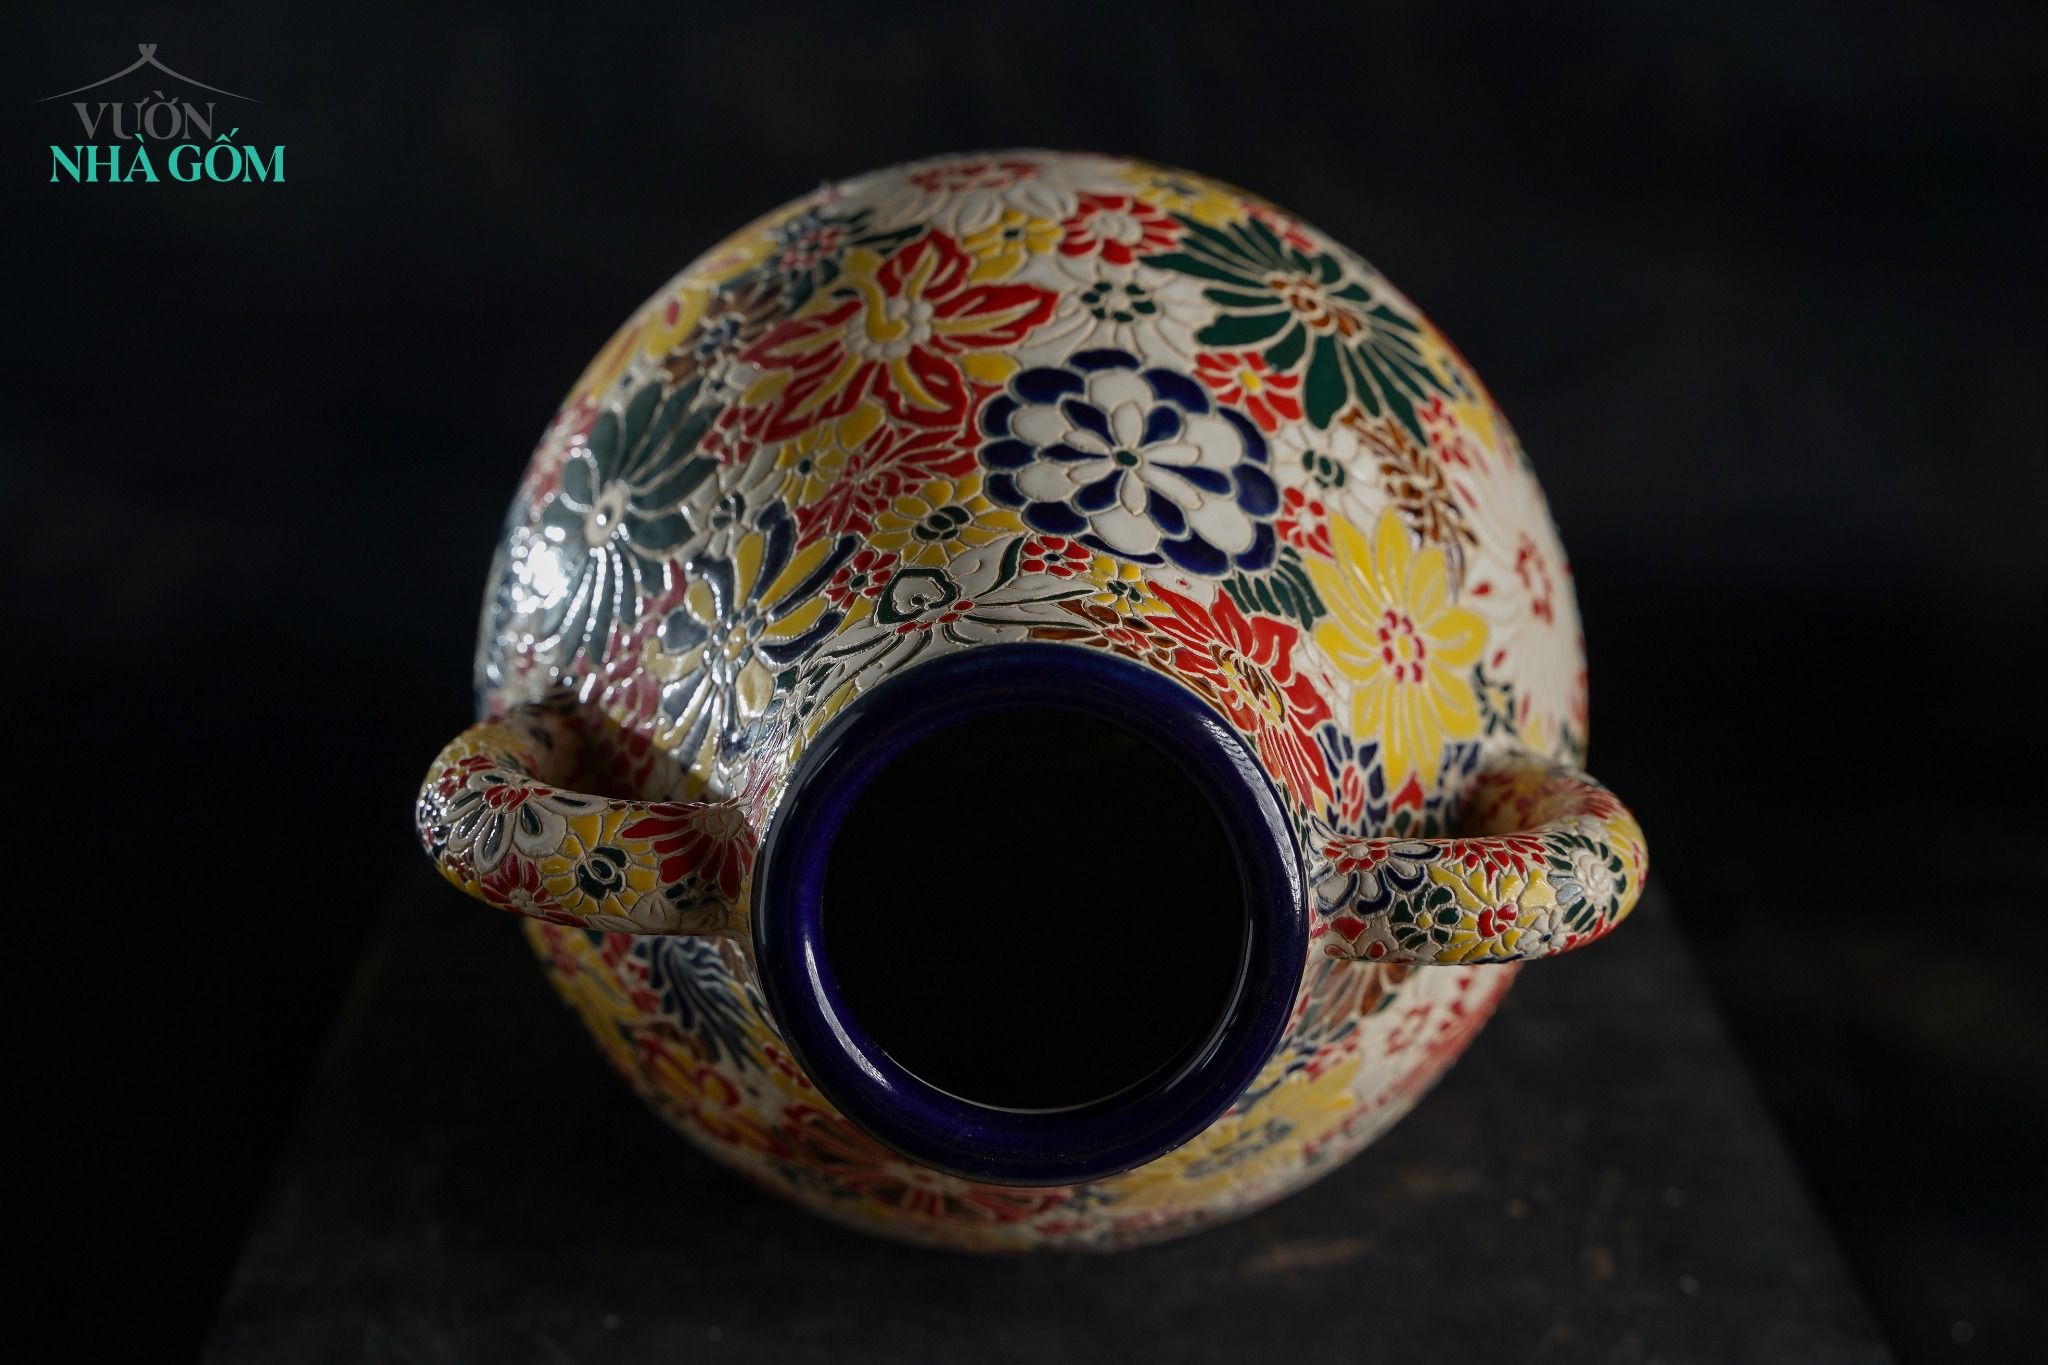  Bình gốm thủ công khắc Bách Hoa rực rỡ, Gốm Thủ Biên, C30 x M10cm 